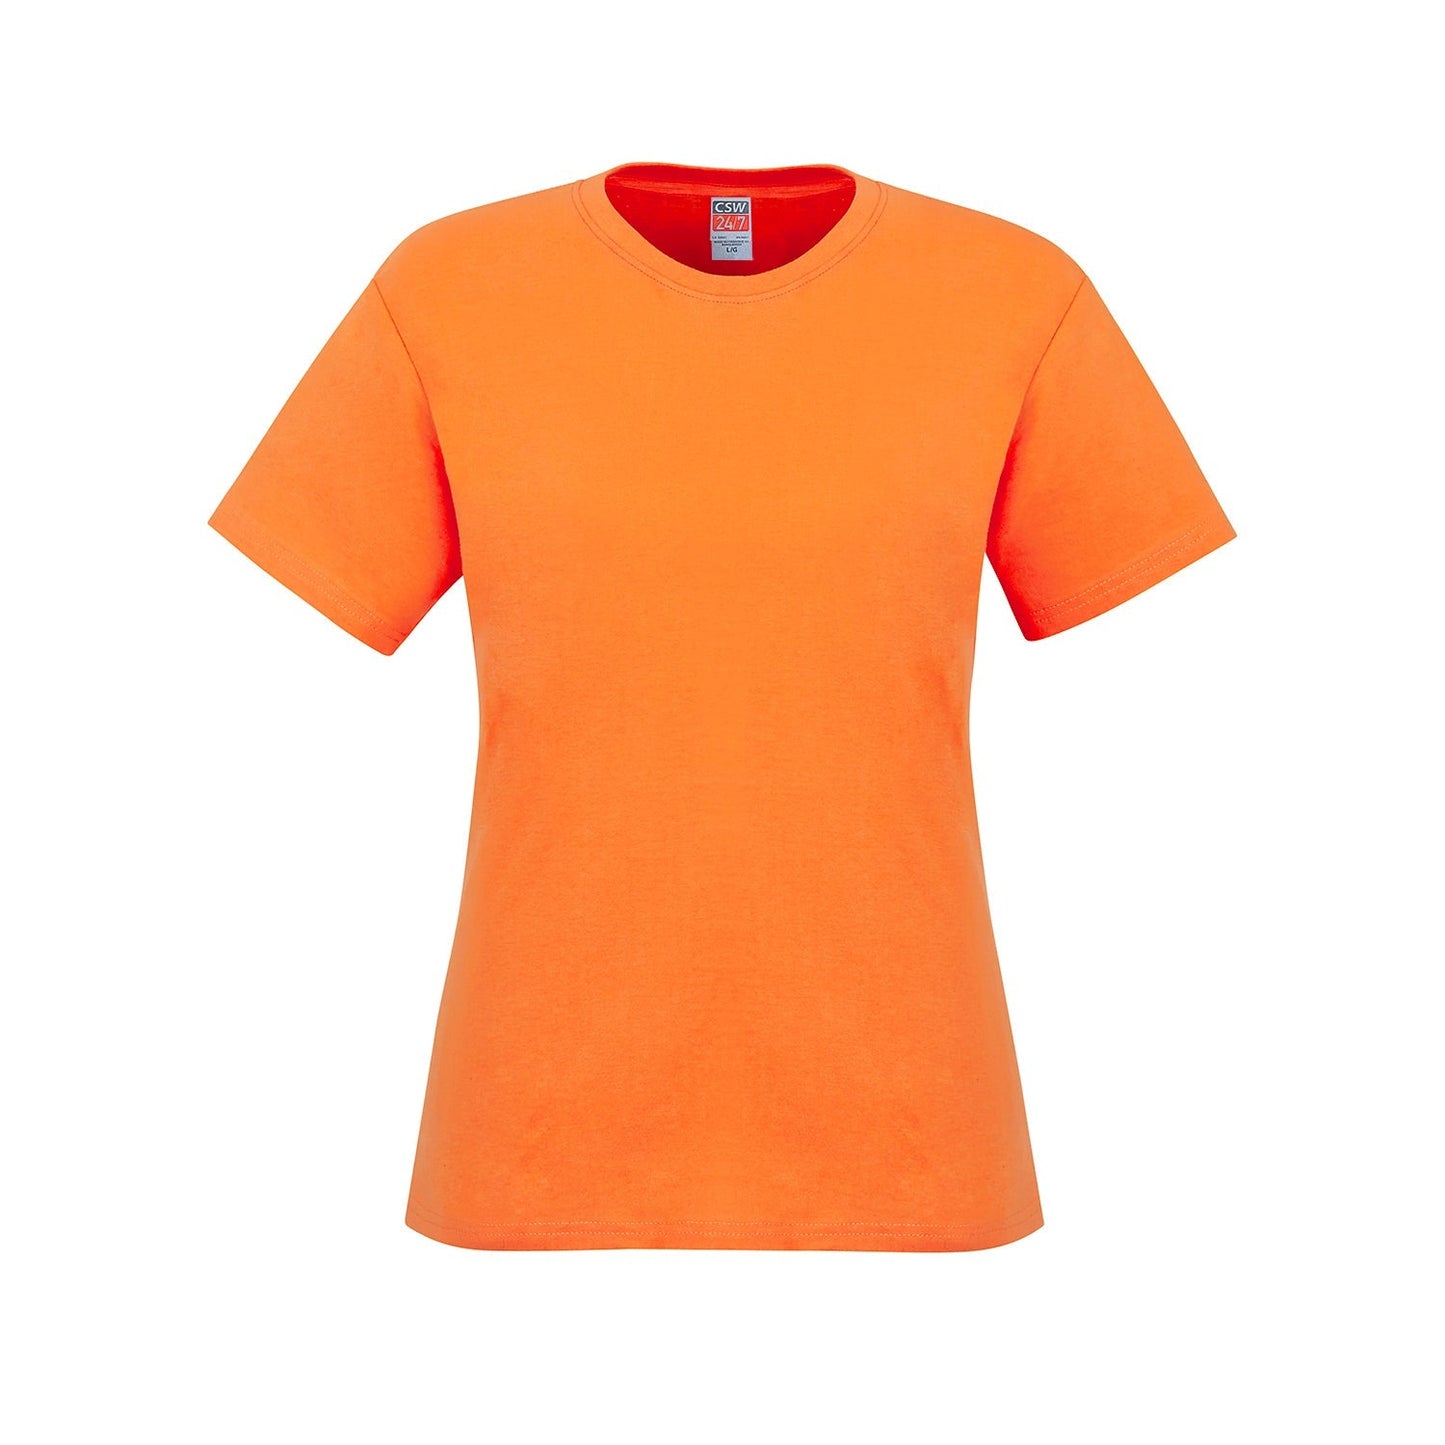 S05611 - Parkour - Ladies Crew Neck Cotton T-Shirt - Orange